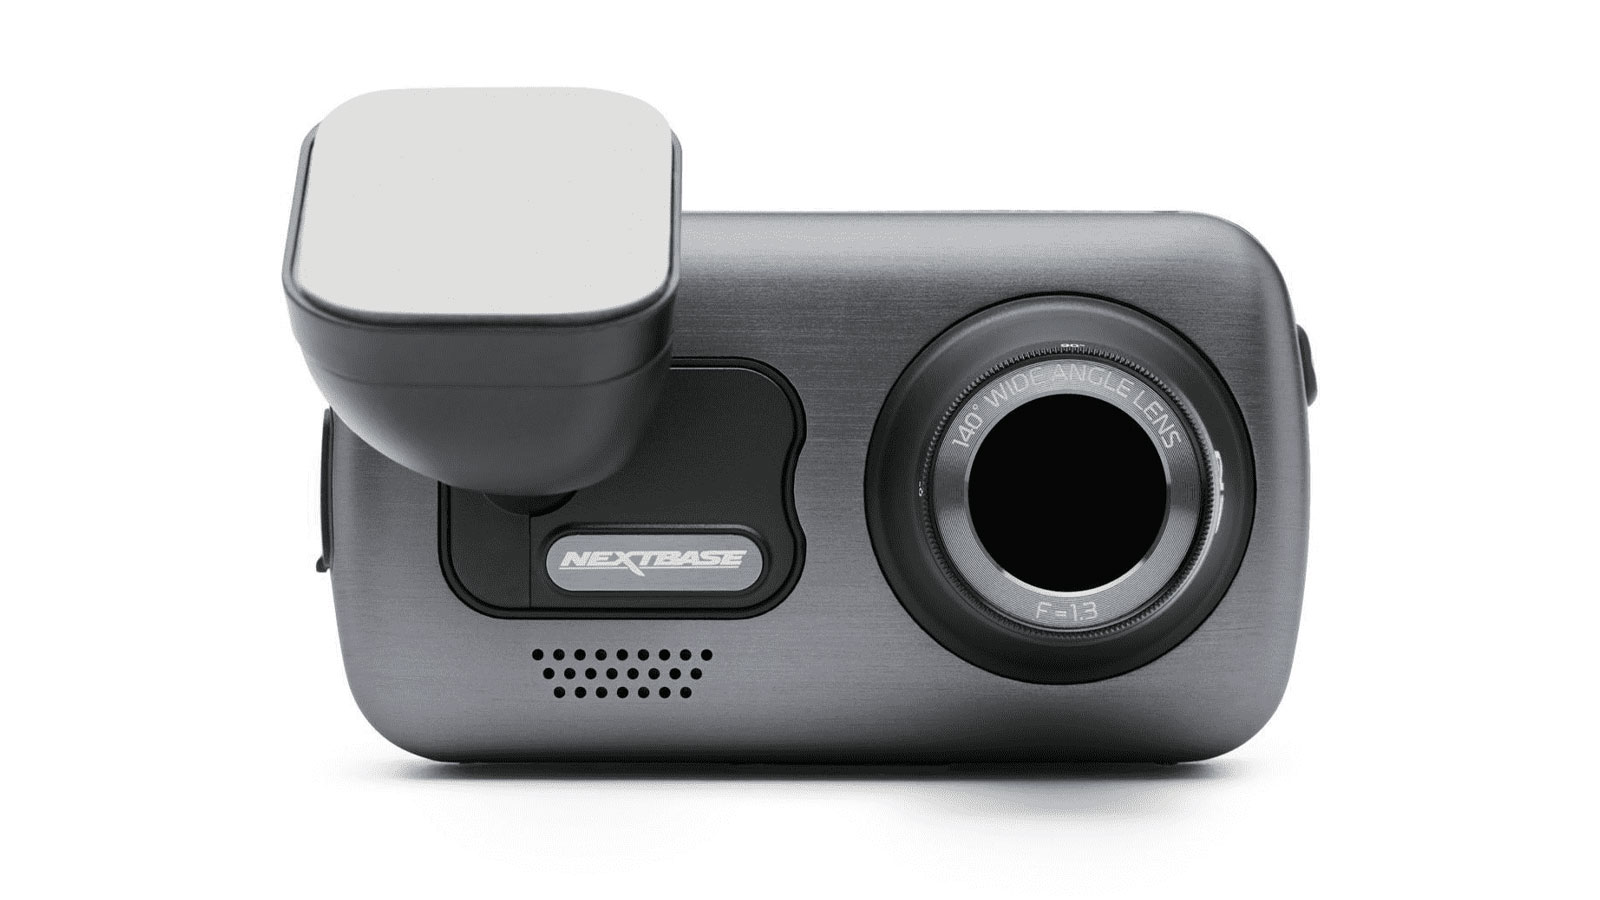 Alexa et Filtre polarisant caméra embarquée pour Voiture Full UHD 4K/30 fps Qui filme à 280° avec WiFi what3words Nextbase 622GW Double Dashcam Voiture Avant/arrière GPS Bluetooth 